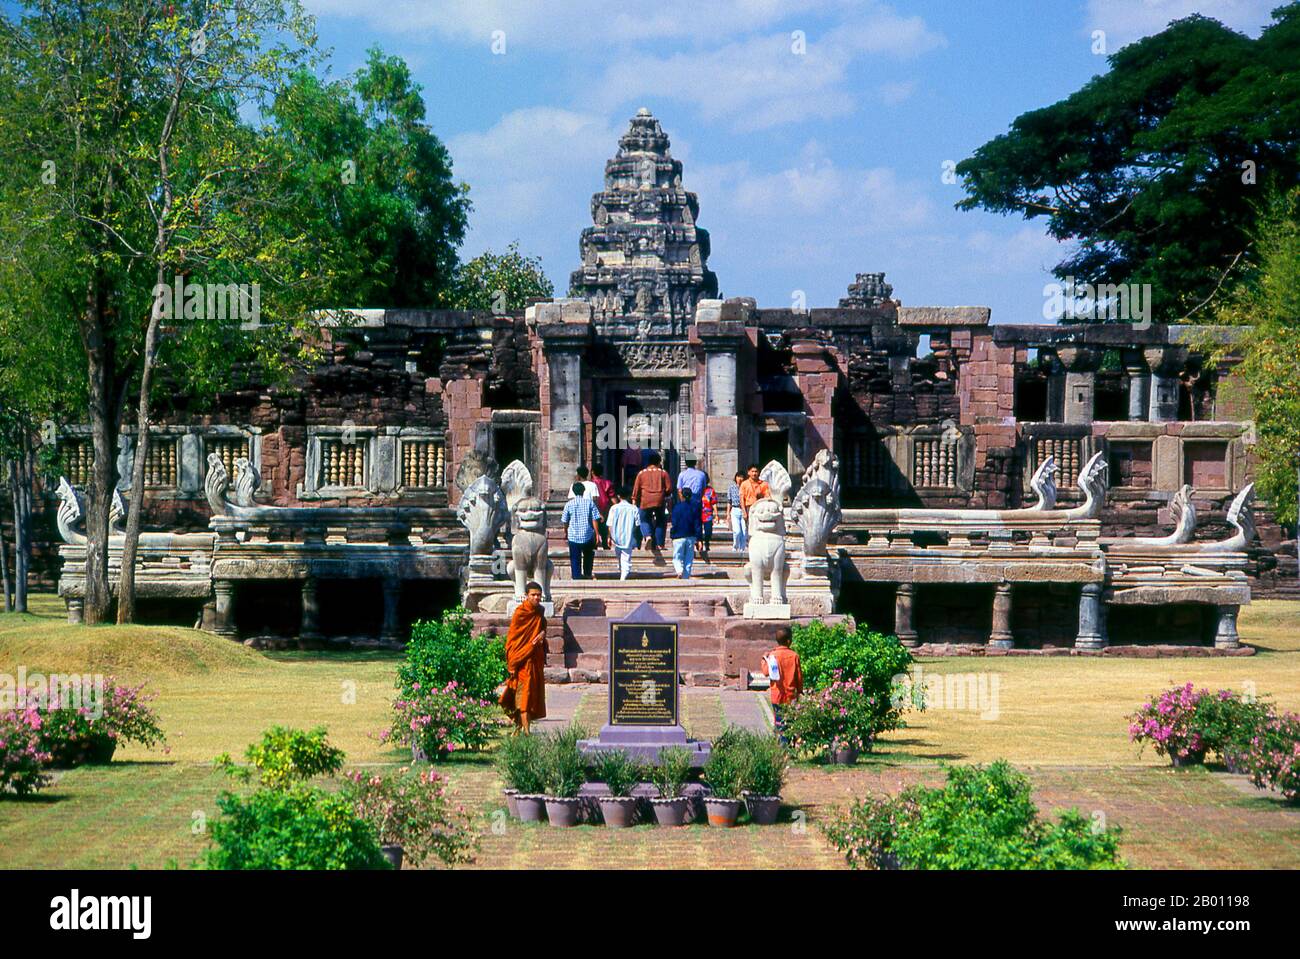 Thailand: Mönch und andere Besucher im Prasat hin Phimai, Historischer Park von Phimai, Provinz Nakhon Ratchasima. Phimai stammt aus dem 11. Und 12. Jahrhundert und war ein wichtiger buddhistischer Tempel und eine Stadt im Khmer-Reich. Der Komplex in Phimai stammt ursprünglich aus der Regierungszeit von Surayavarman II (r. 1113 - 1150), während der ersten Hälfte des 12. Jahrhunderts u.Z. Der Tempel wurde aus weißem, feinkörnigem Sandstein gebaut, im gleichen Stil wie Angkor Wat. Ebenso wie Angkor wurde auch Phimai zunächst dem Vishnu-Kult gewidmet. Der zentrale Turm des Heiligtums stammt aus dieser frühen Periode. Stockfoto